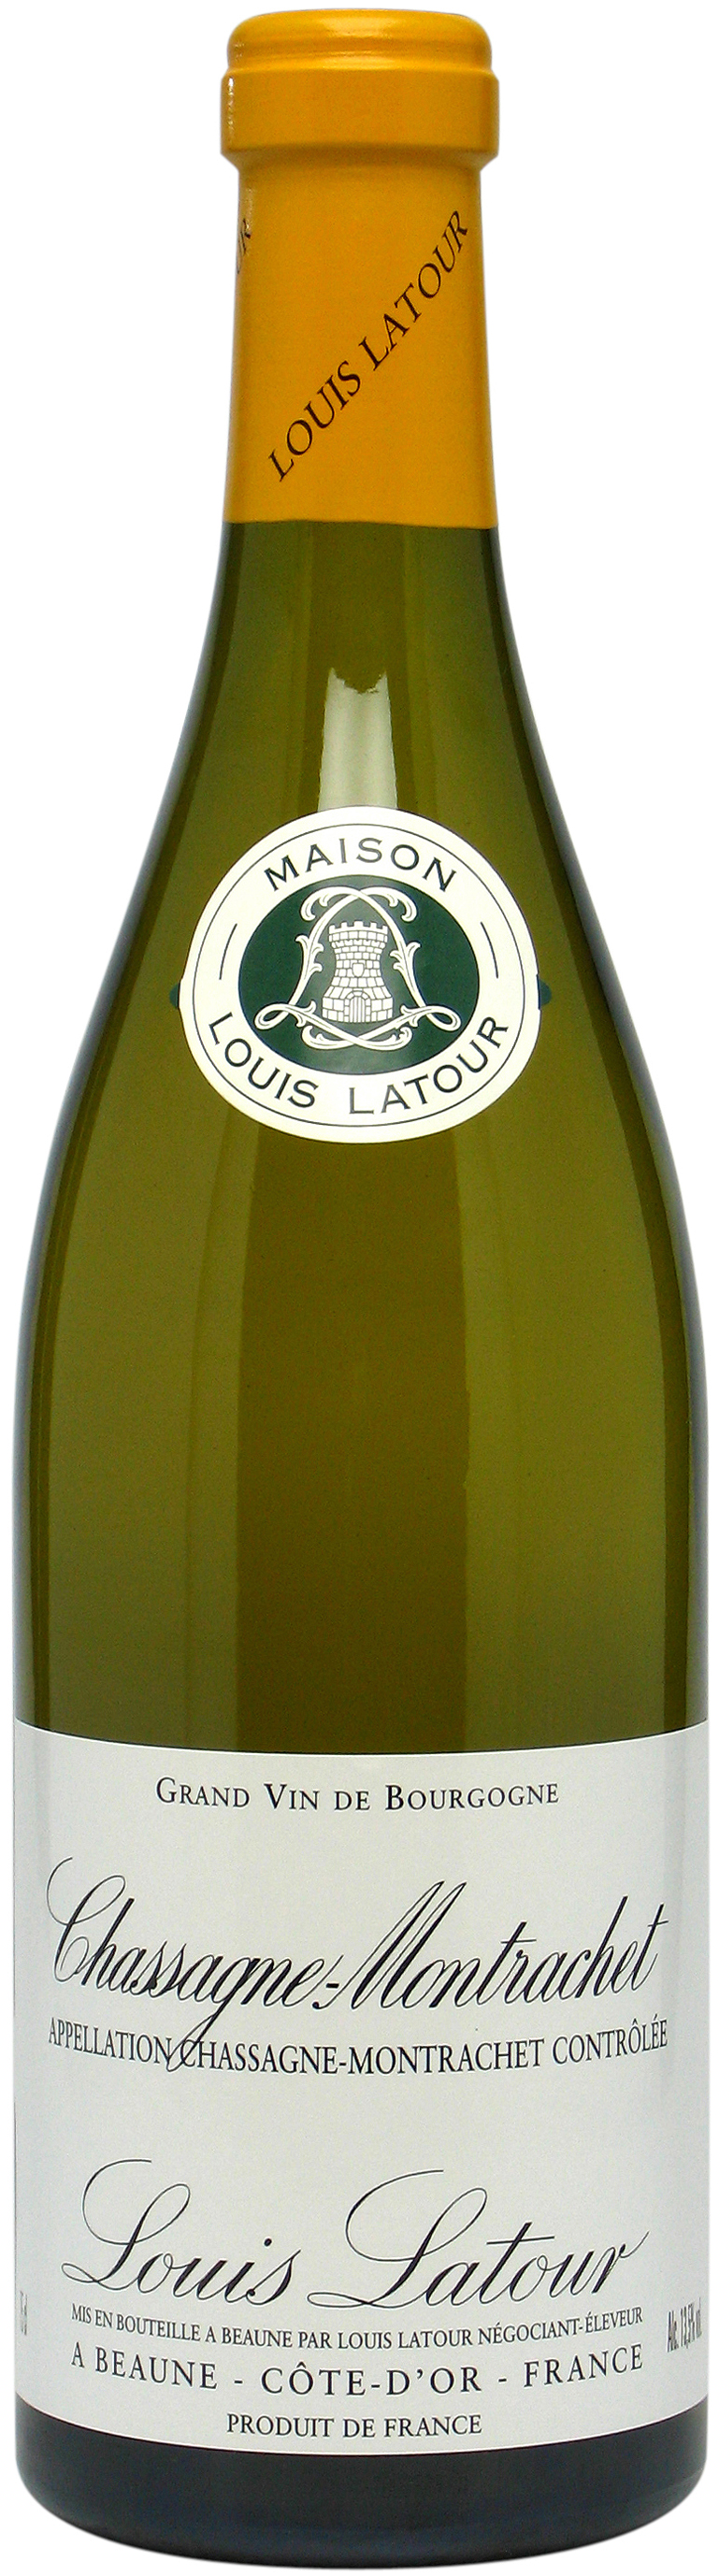 Louis Latour, Chassagne-Montrachet